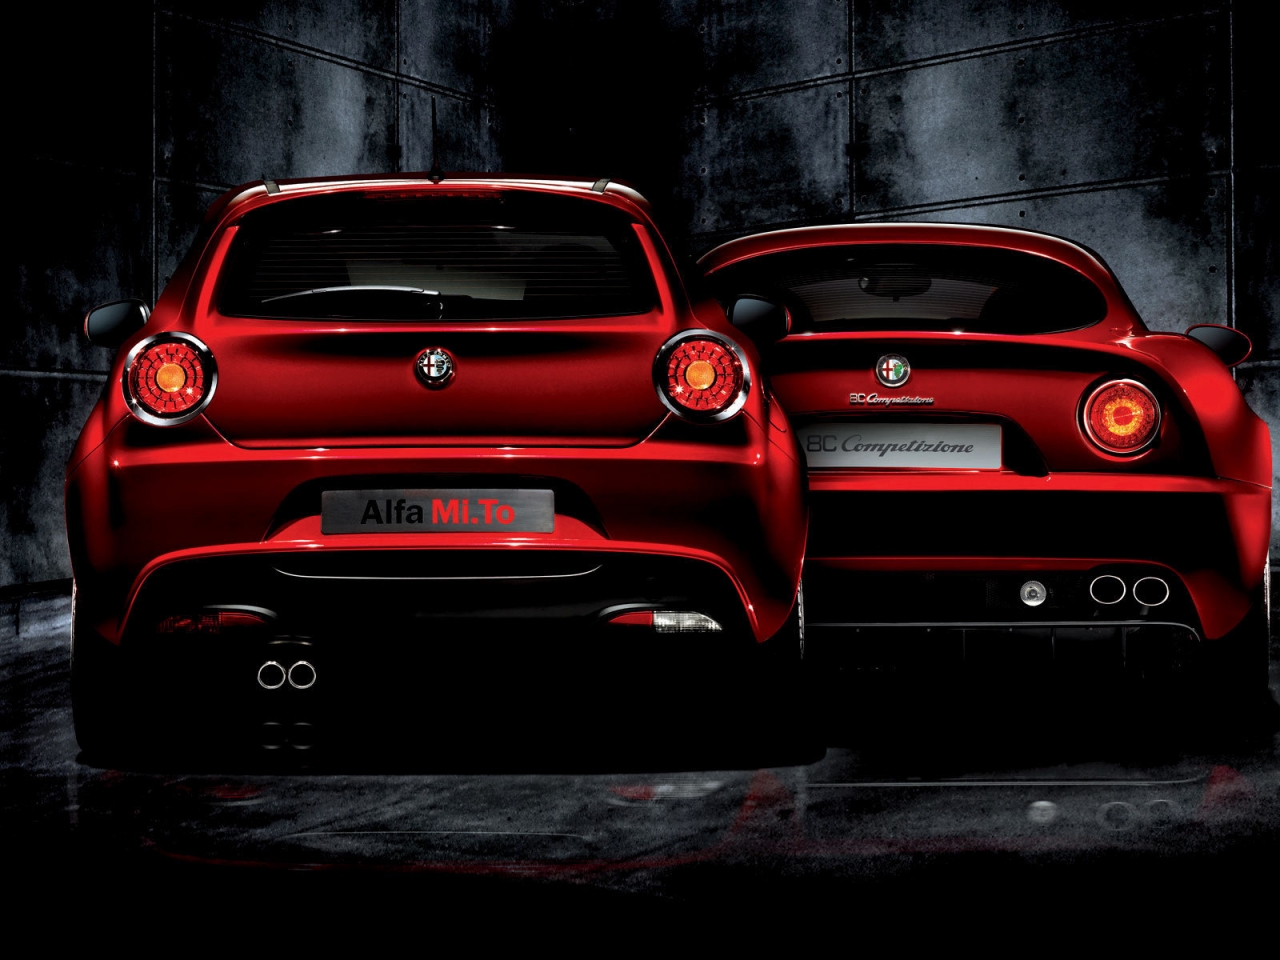 Alfa Romeo Mi To and 8C Competizione for 1280 x 960 resolution